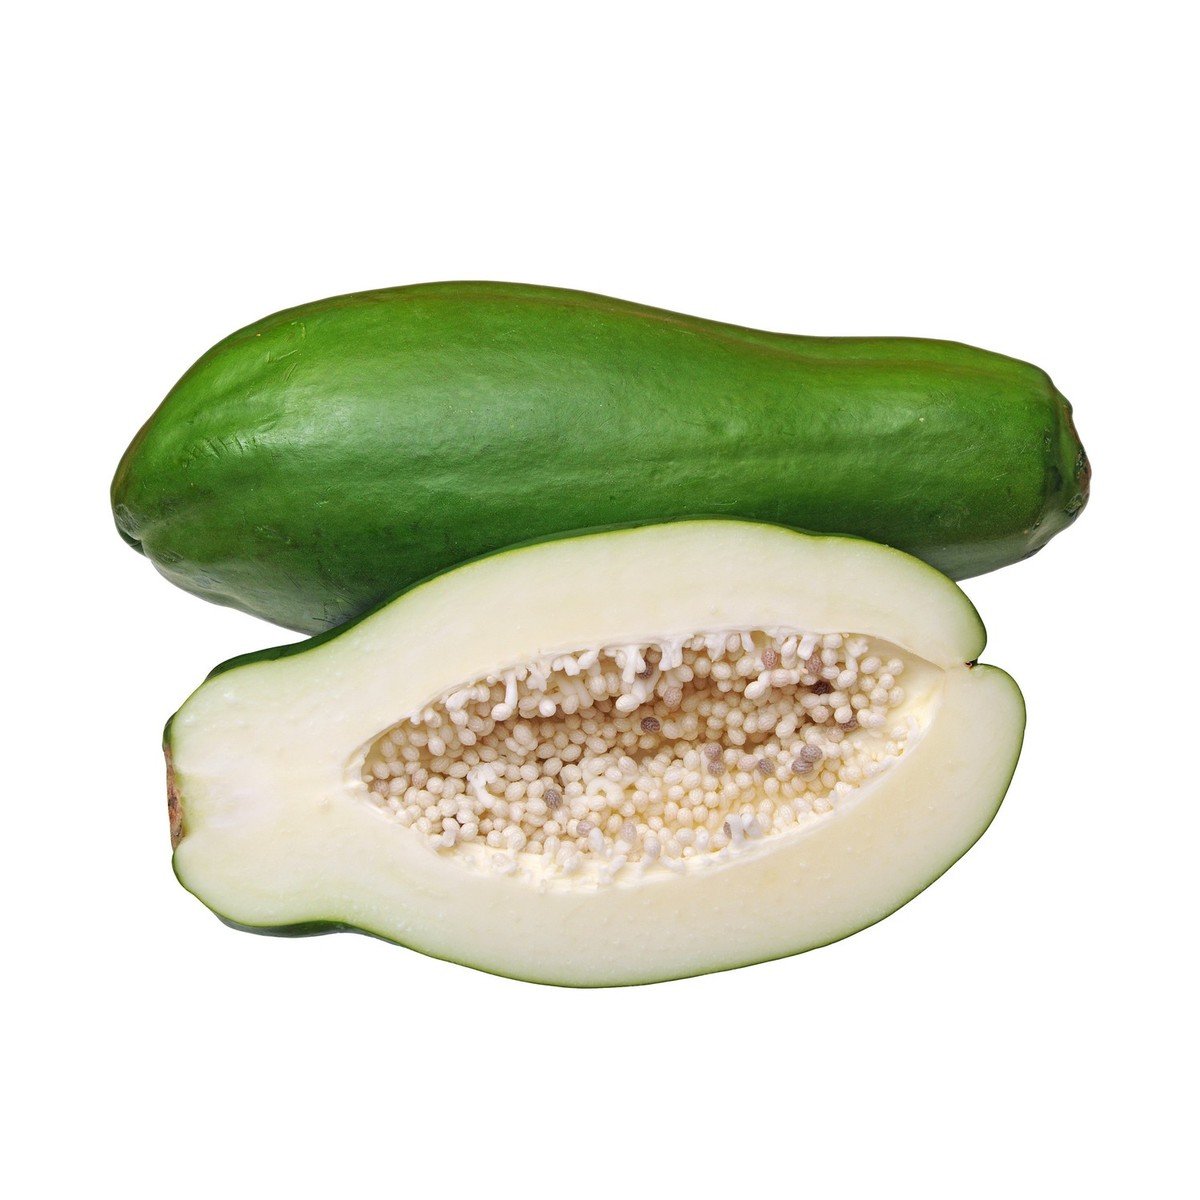 Buy Green Papaya 700 g - 900 g Online at Best Price | Green Vegetables | Lulu KSA in Saudi Arabia